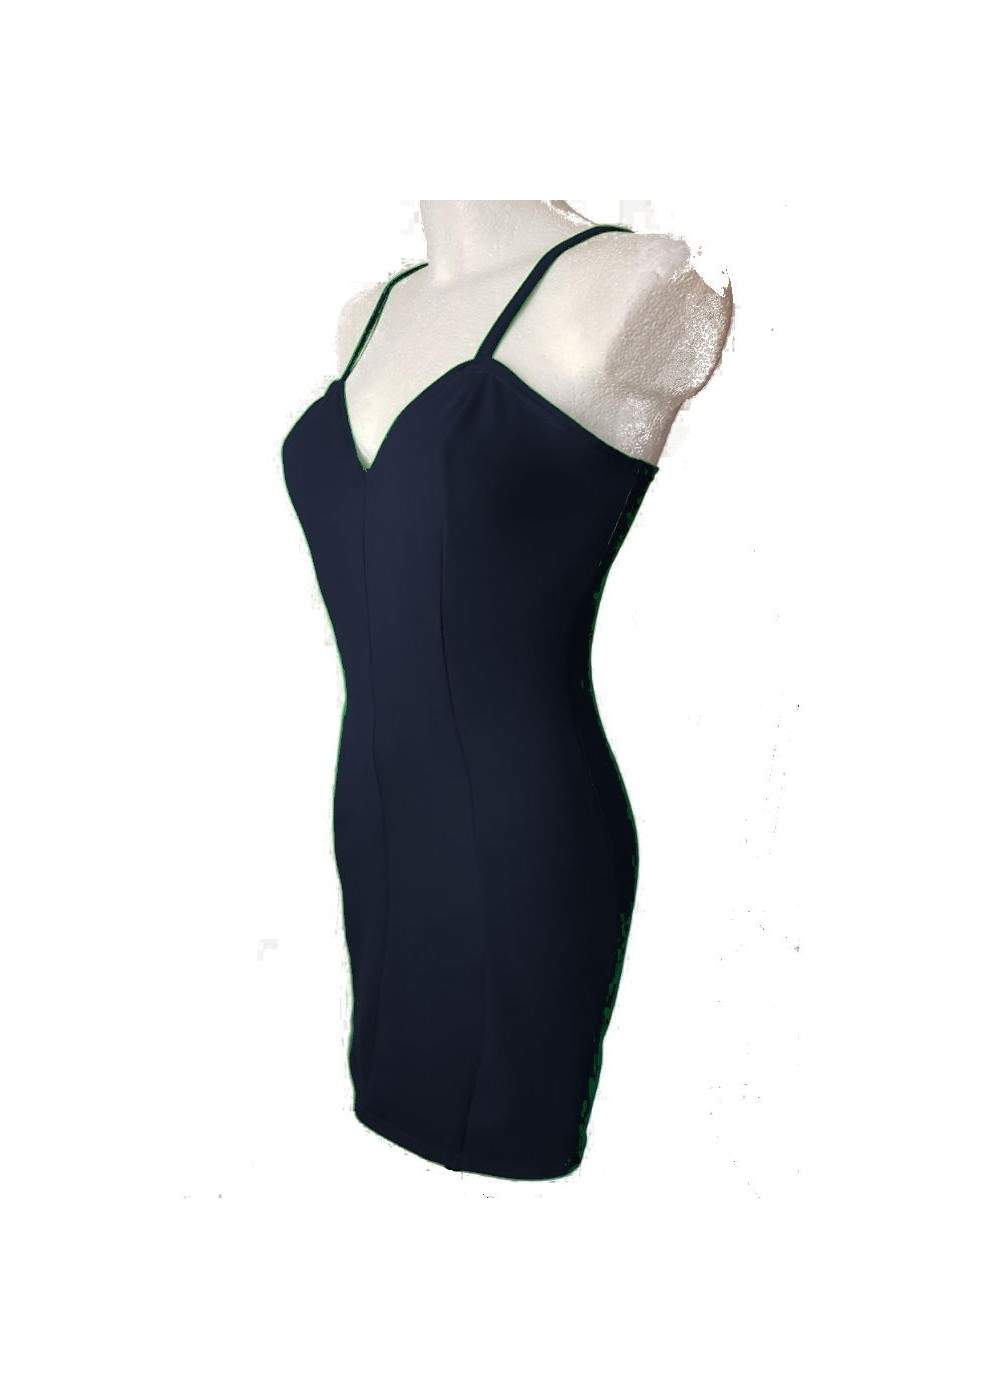 Blue Stretch Cotton Strap Dress CockTeildress Sizes 34 - 52 - Deutsche Produktion